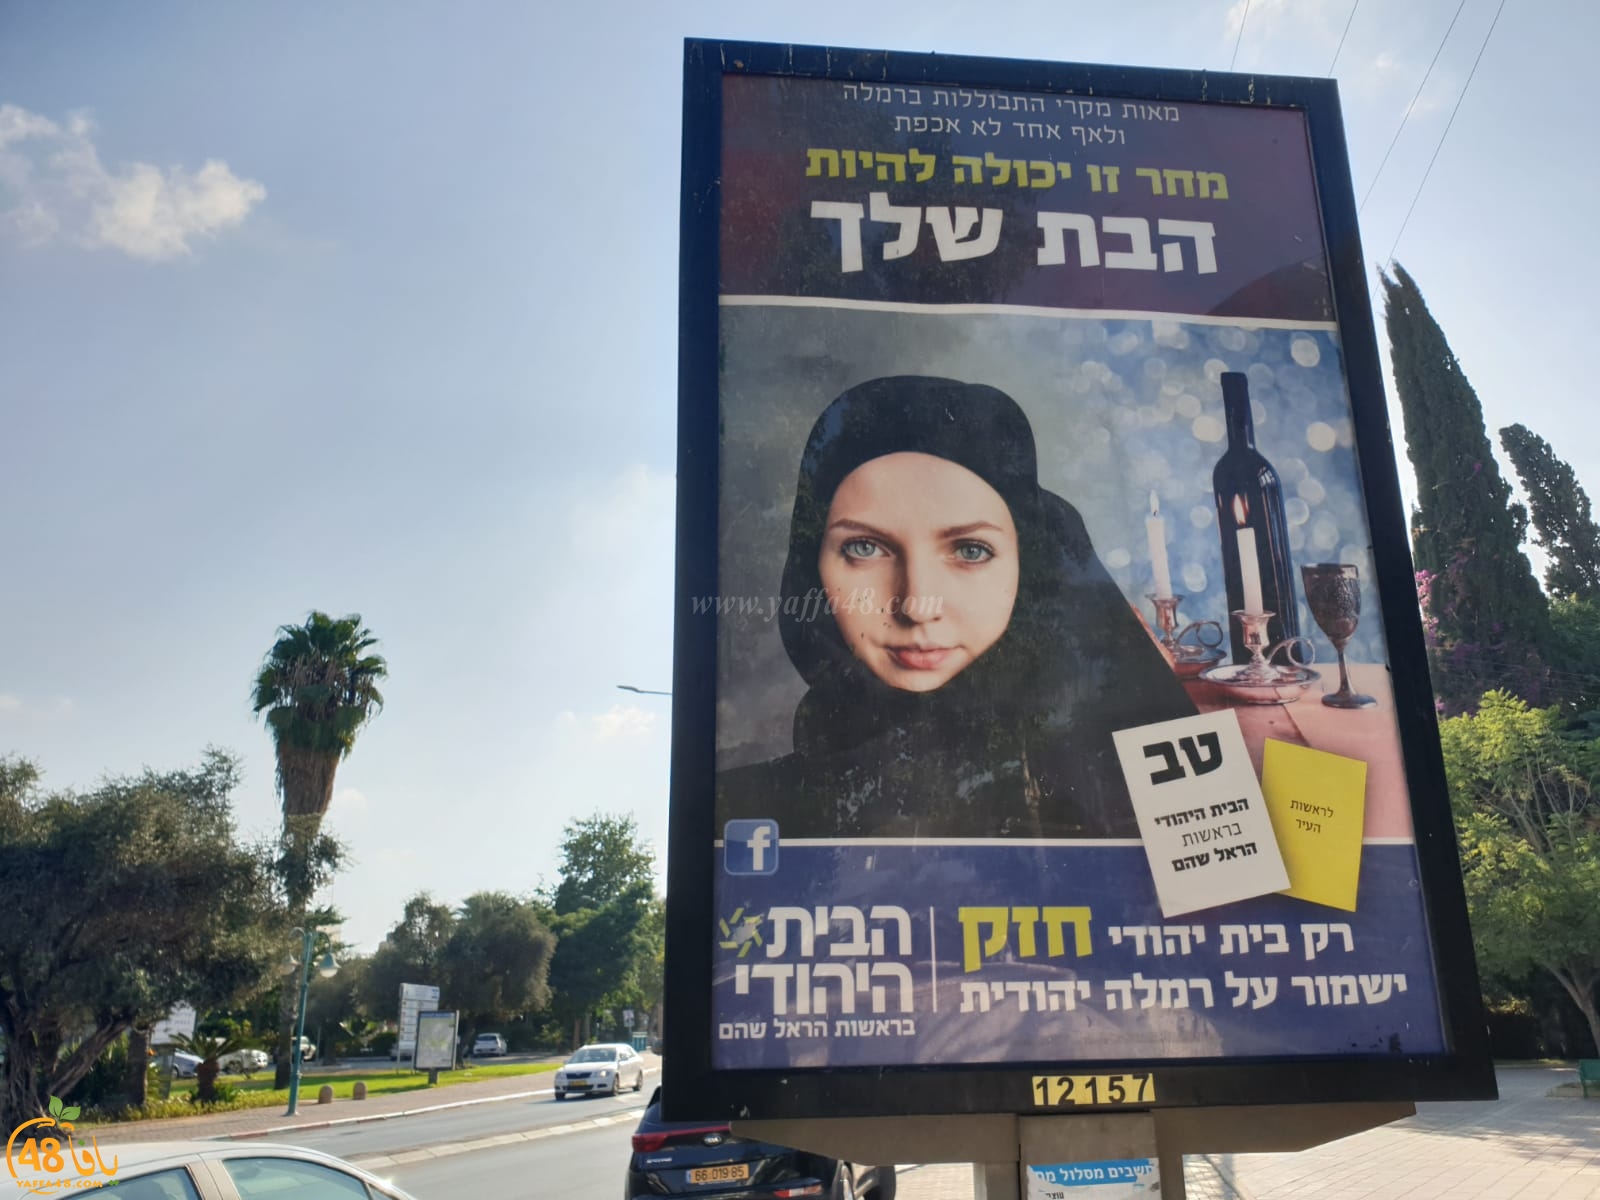  عدوى العنصرية تصل الى الرملة - تحريض على الحجاب ضمن حملة دعائية للبيت اليهودي